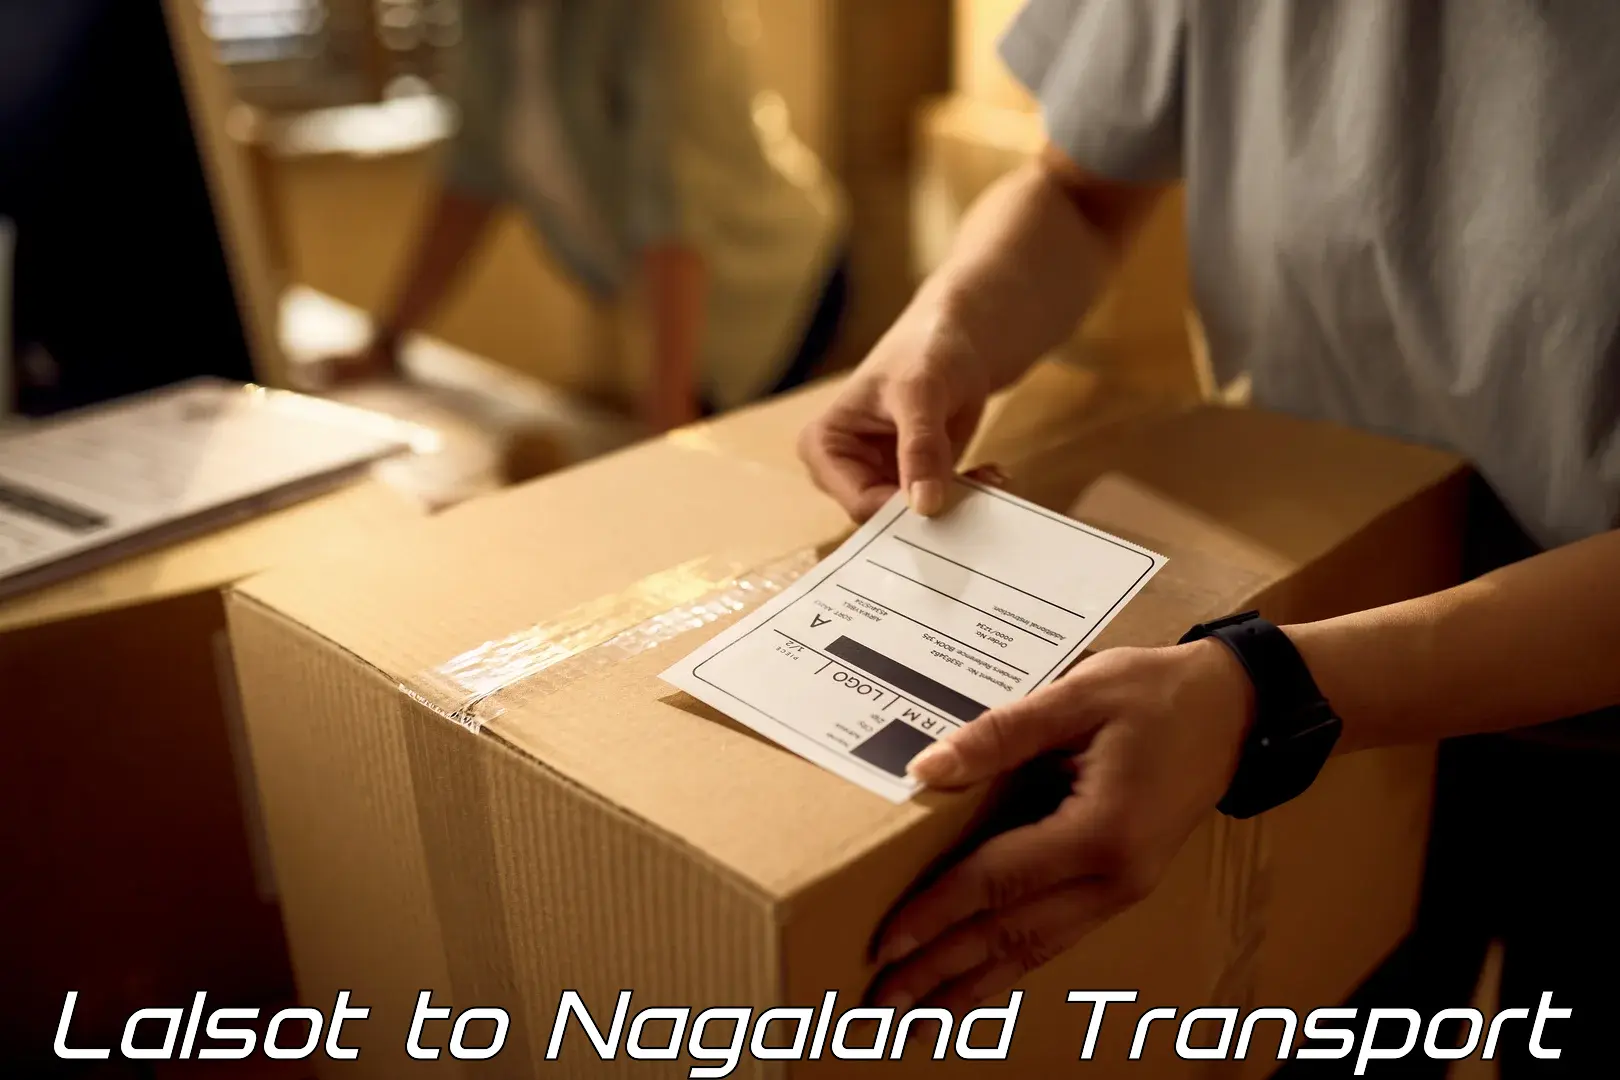 Shipping partner Lalsot to Nagaland